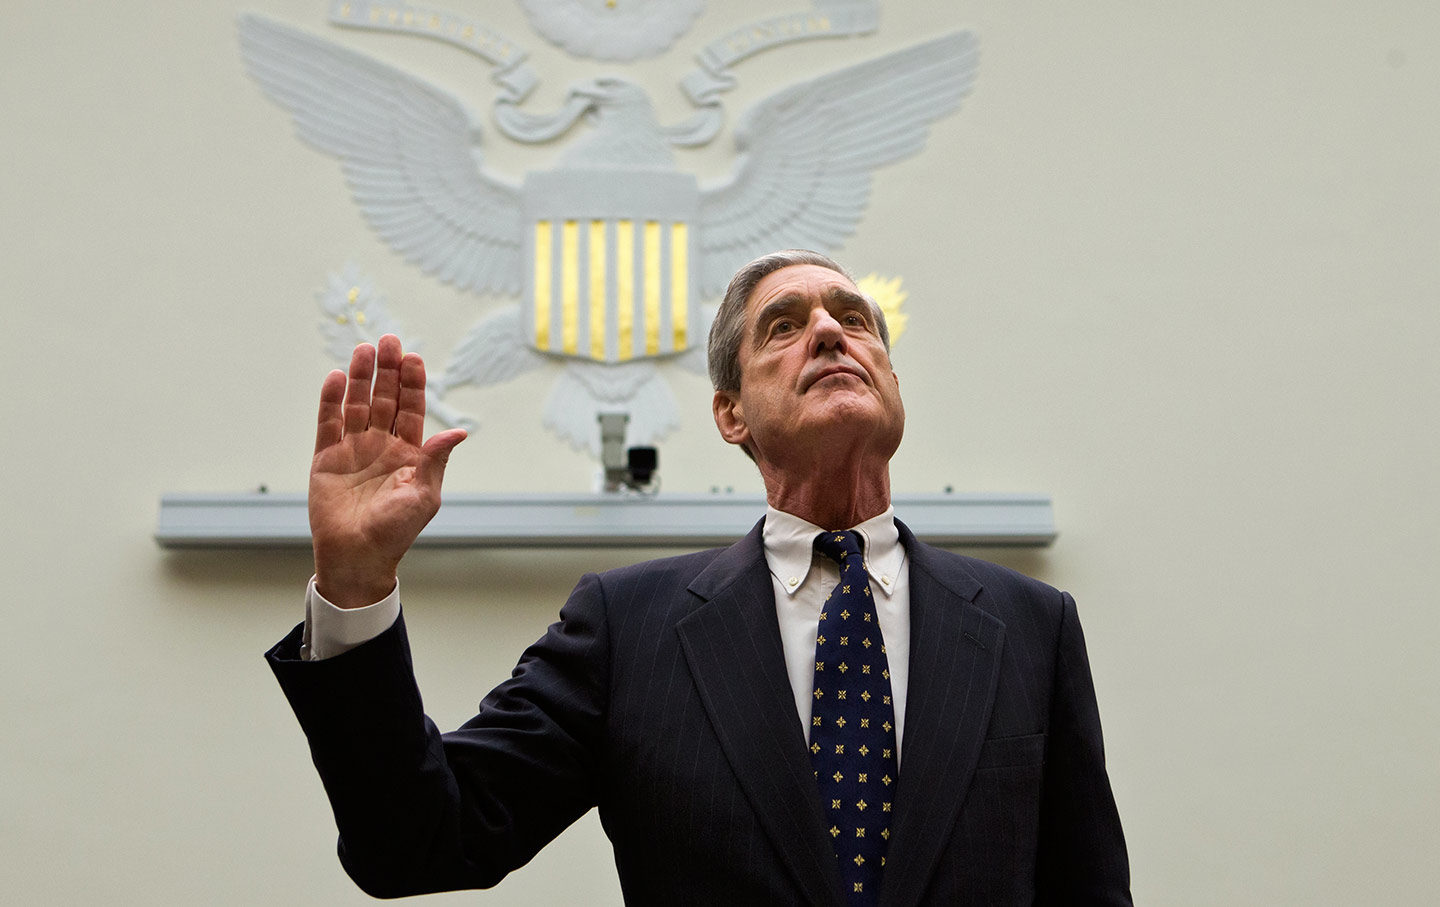 Mueller sworn in